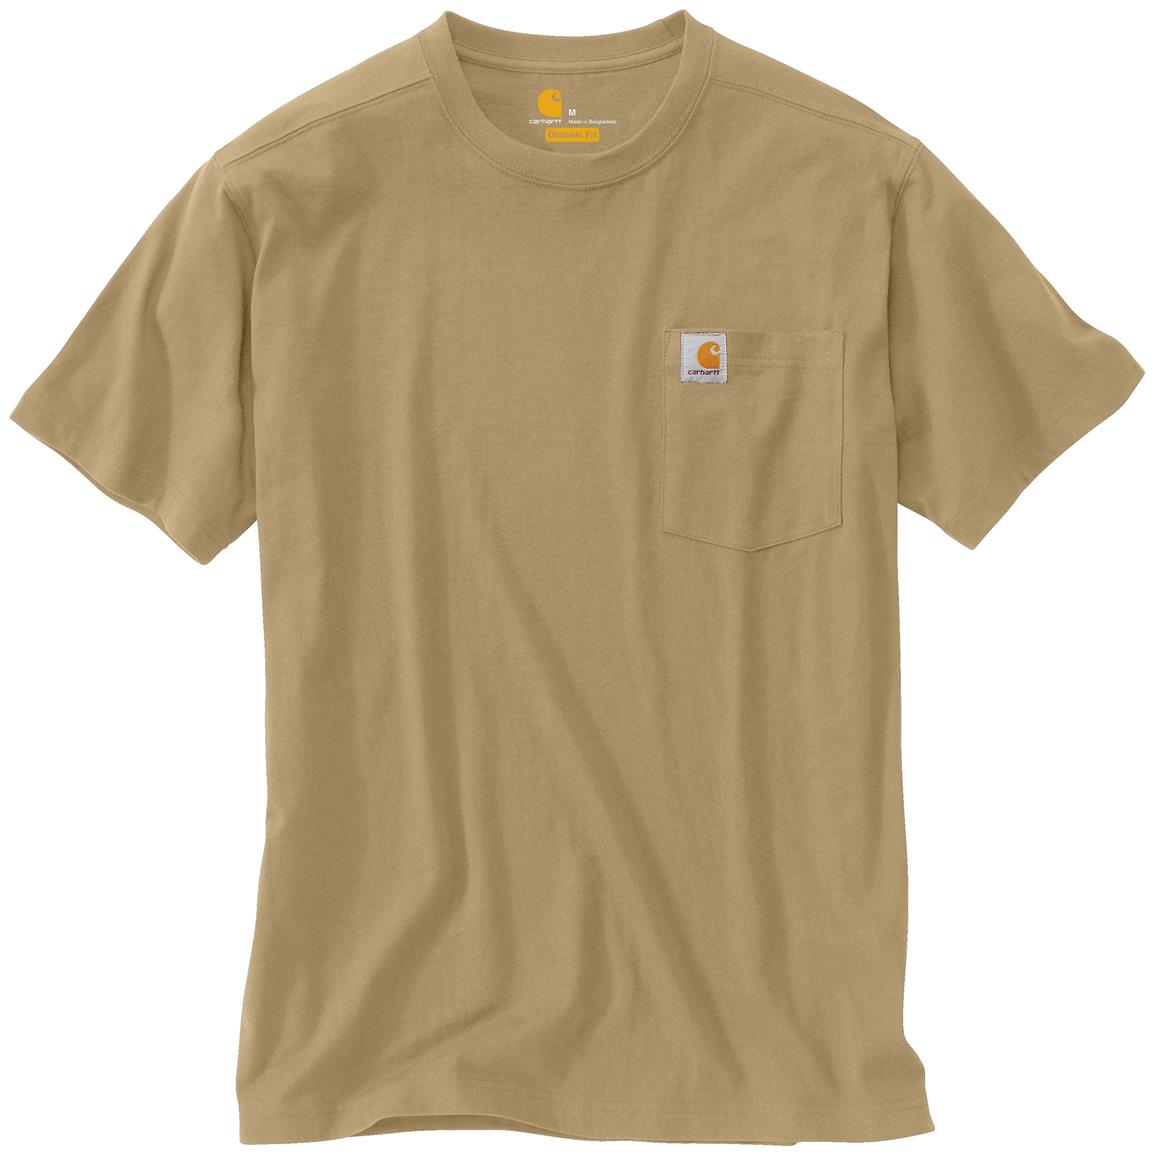 2-Pk. Carhartt Maddock Pocket Work T-shirts - 640223, T-Shirts at ...